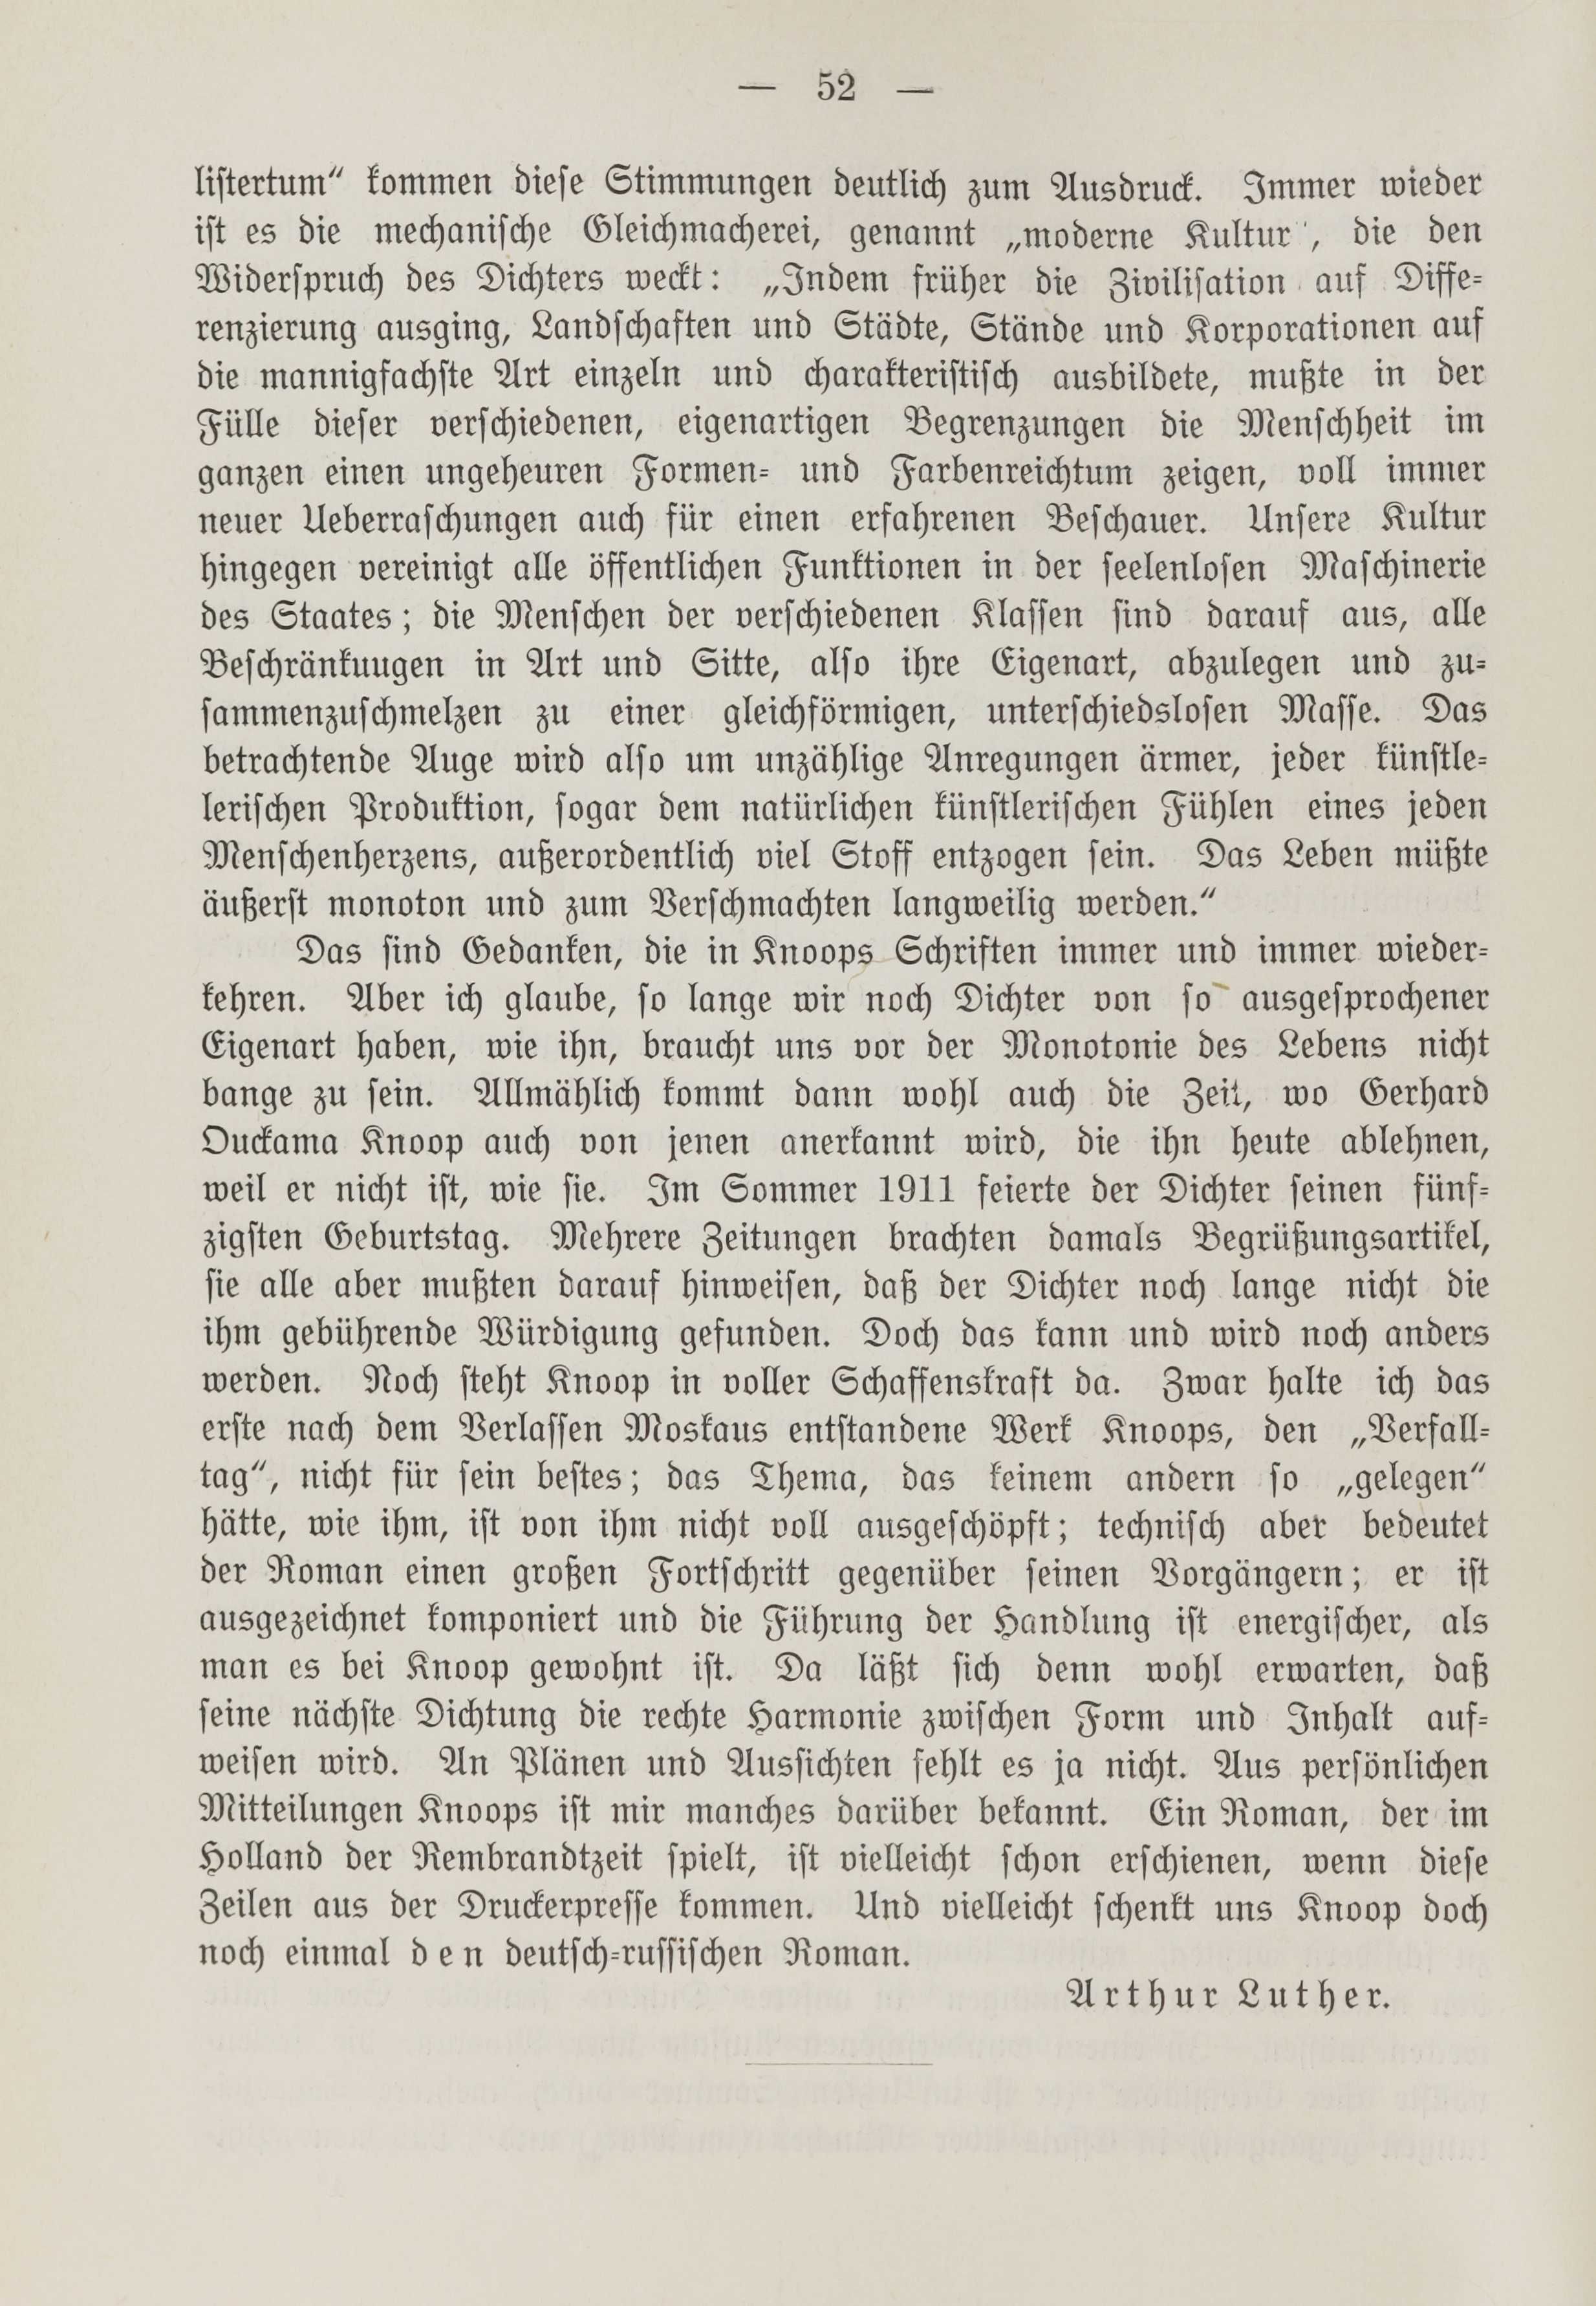 Deutsche Monatsschrift für Russland [1] (1912) | 59. (52) Põhitekst